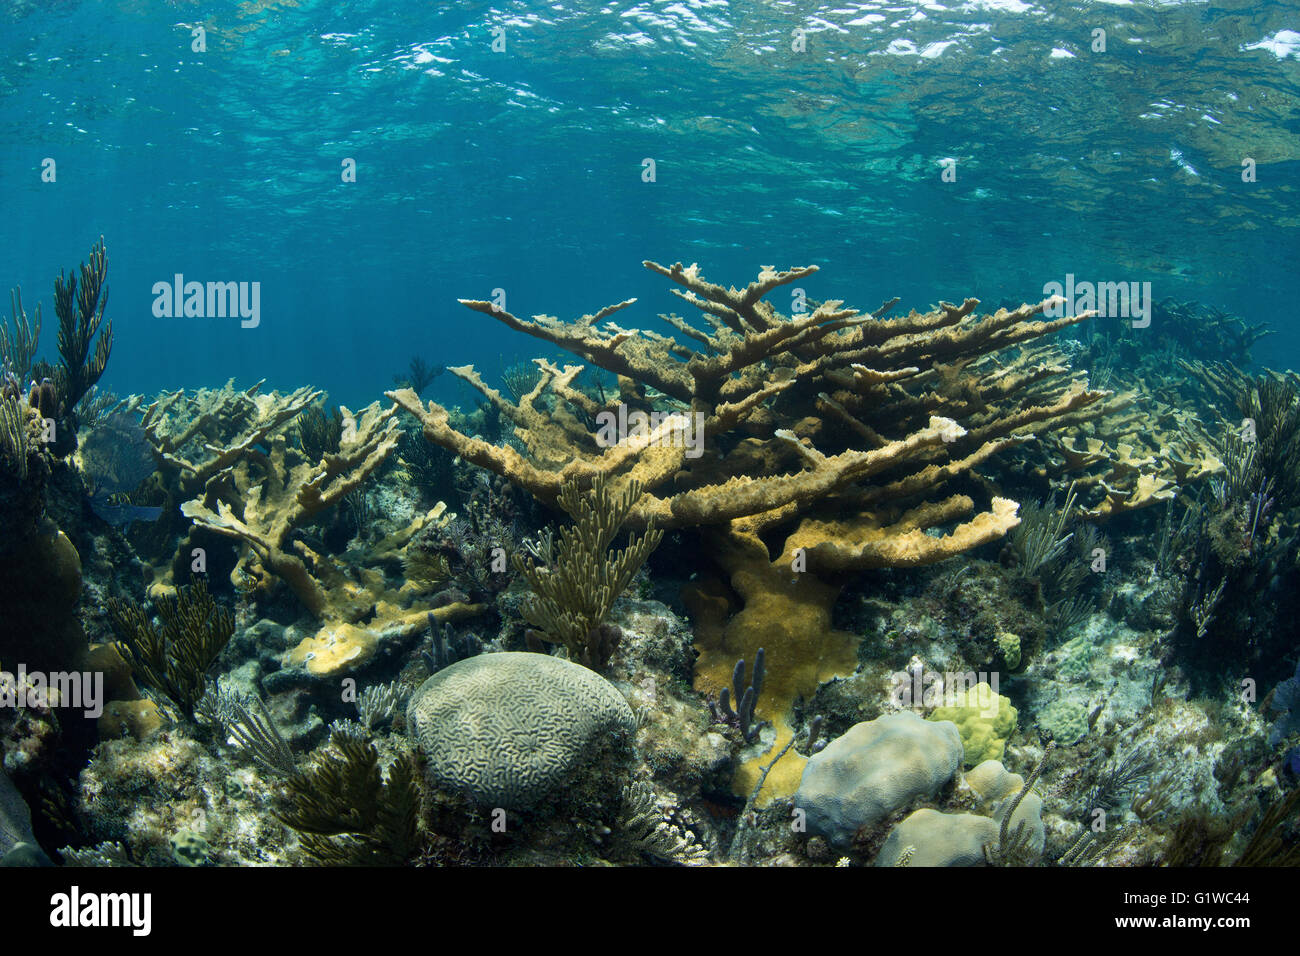 Blick auf ein Korallenriff in der Abacos.  Steinkorallen sind reichlich vorhanden. Stockfoto